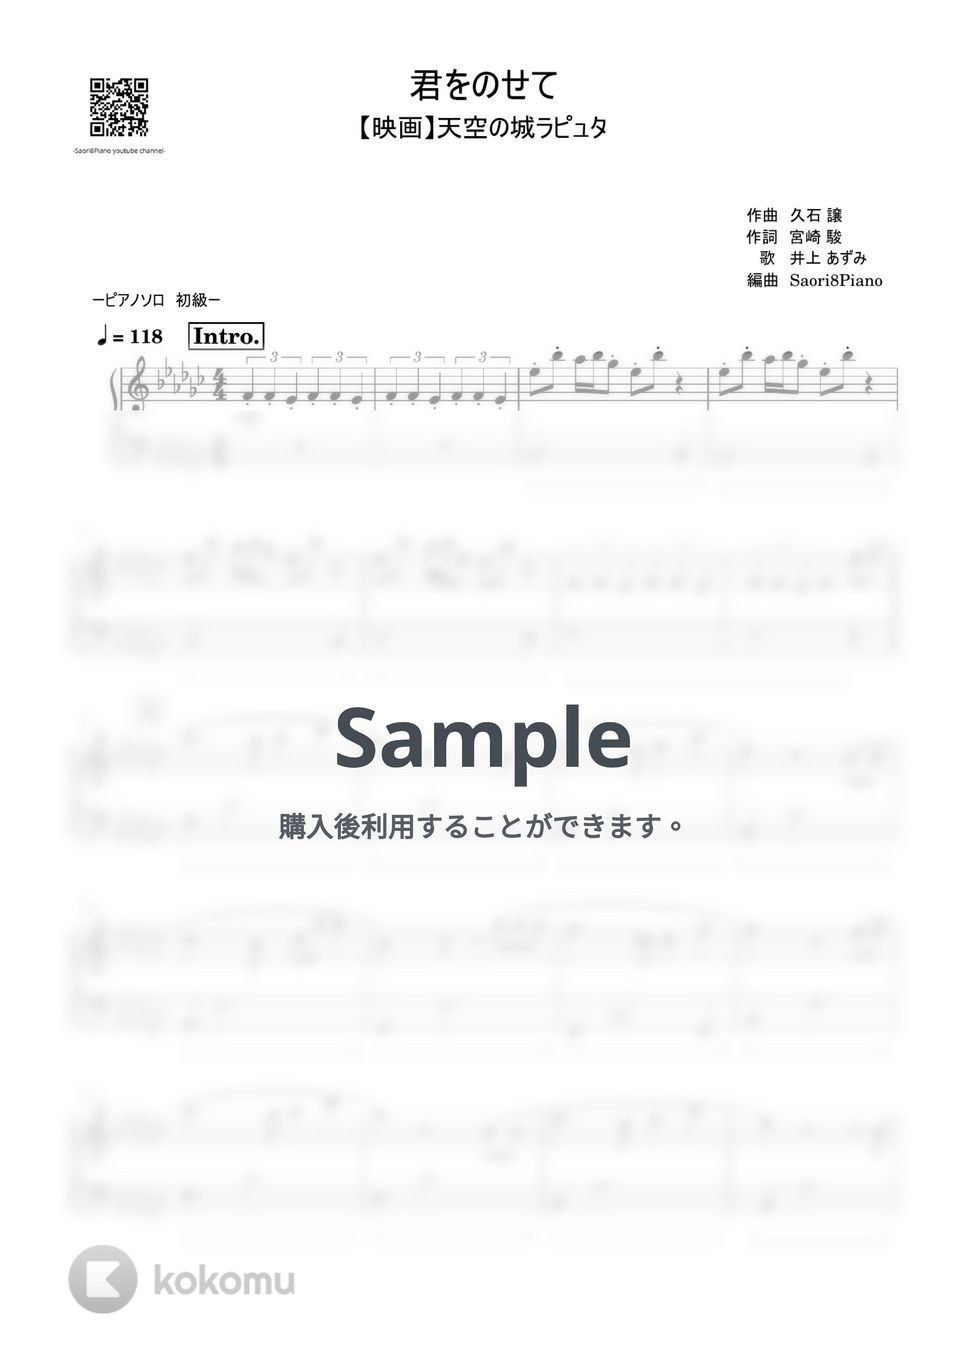 久石 譲 - 君をのせて (初級レベル) by Saori8Piano